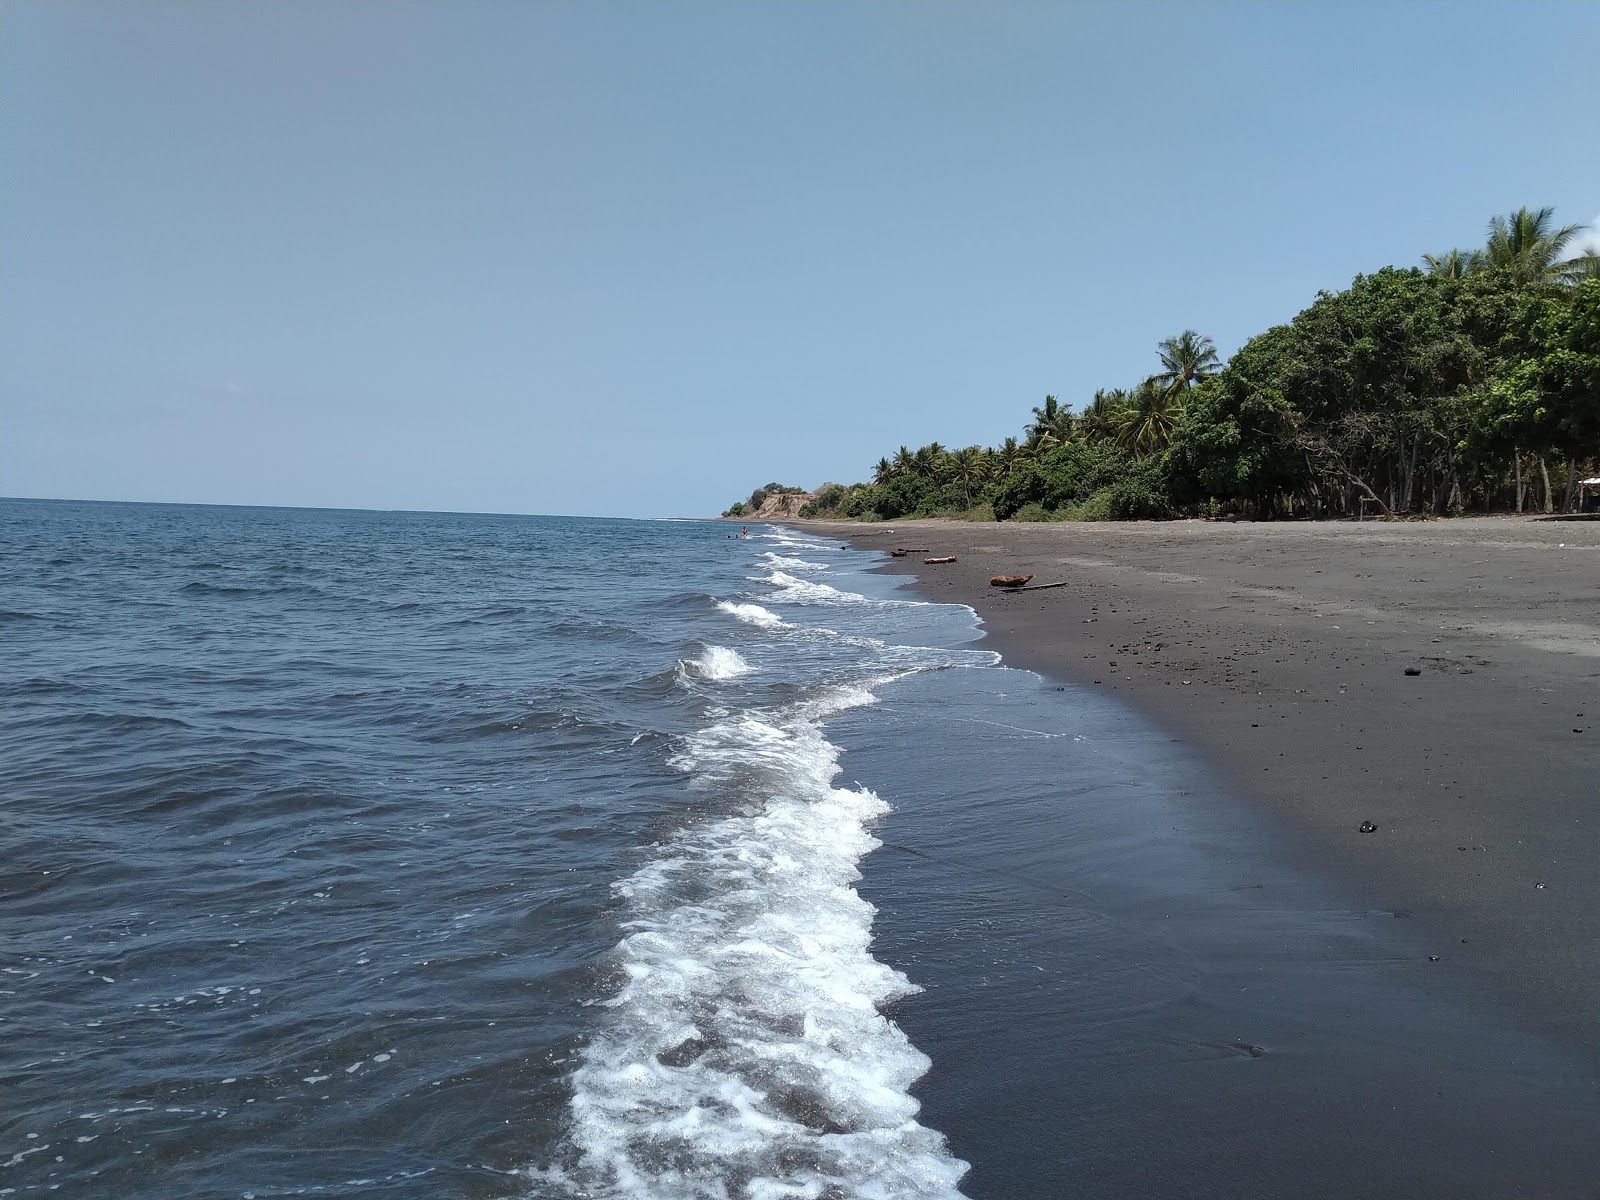 Fotografie cu Beraringan beach cu o suprafață de nisip maro